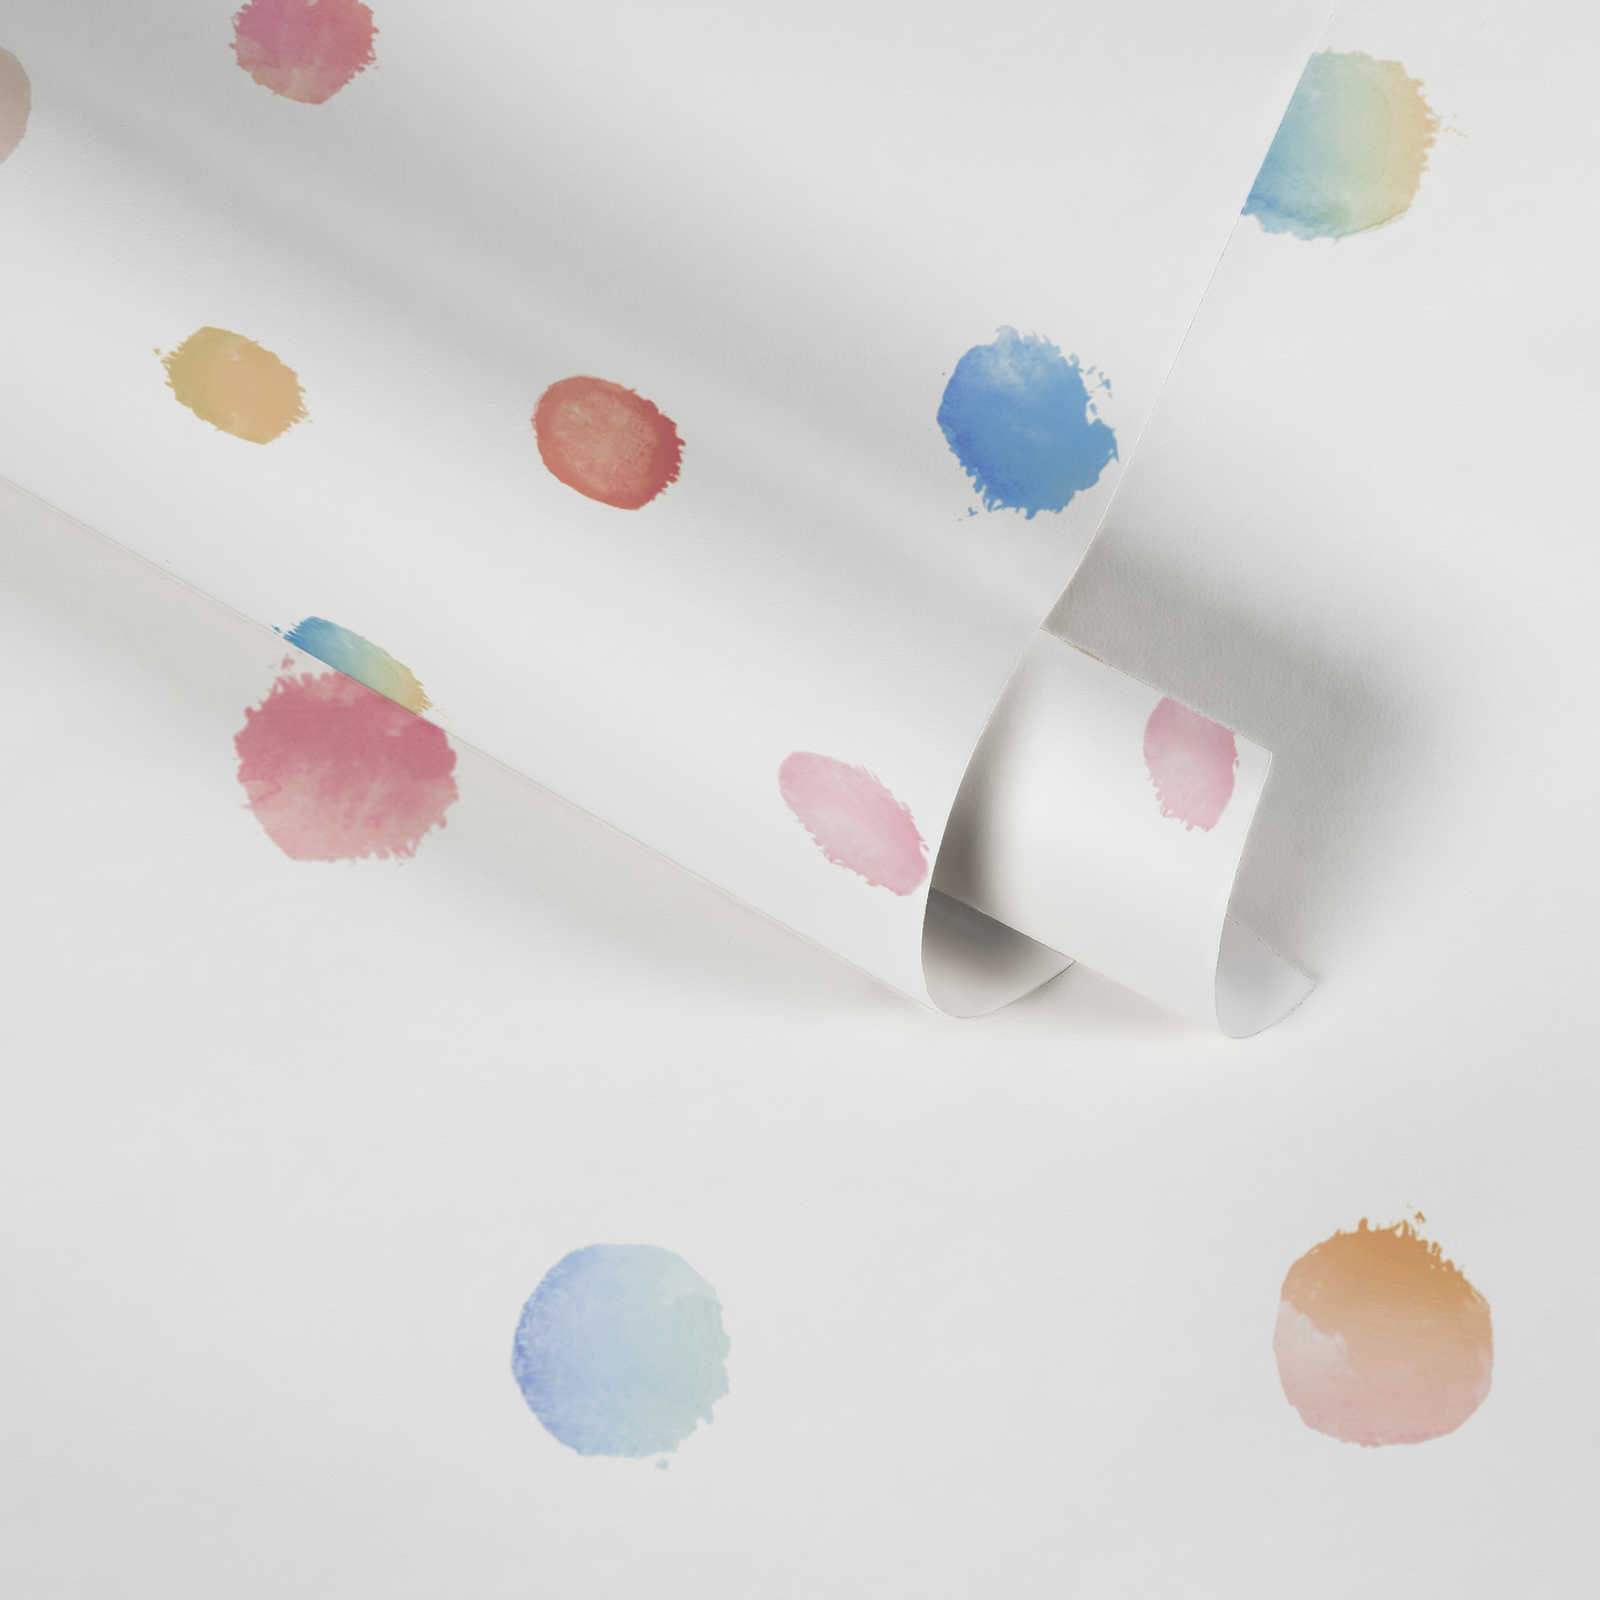             Papier peint chambre enfants aquarelle points - multicolore, blanc, bleu
        